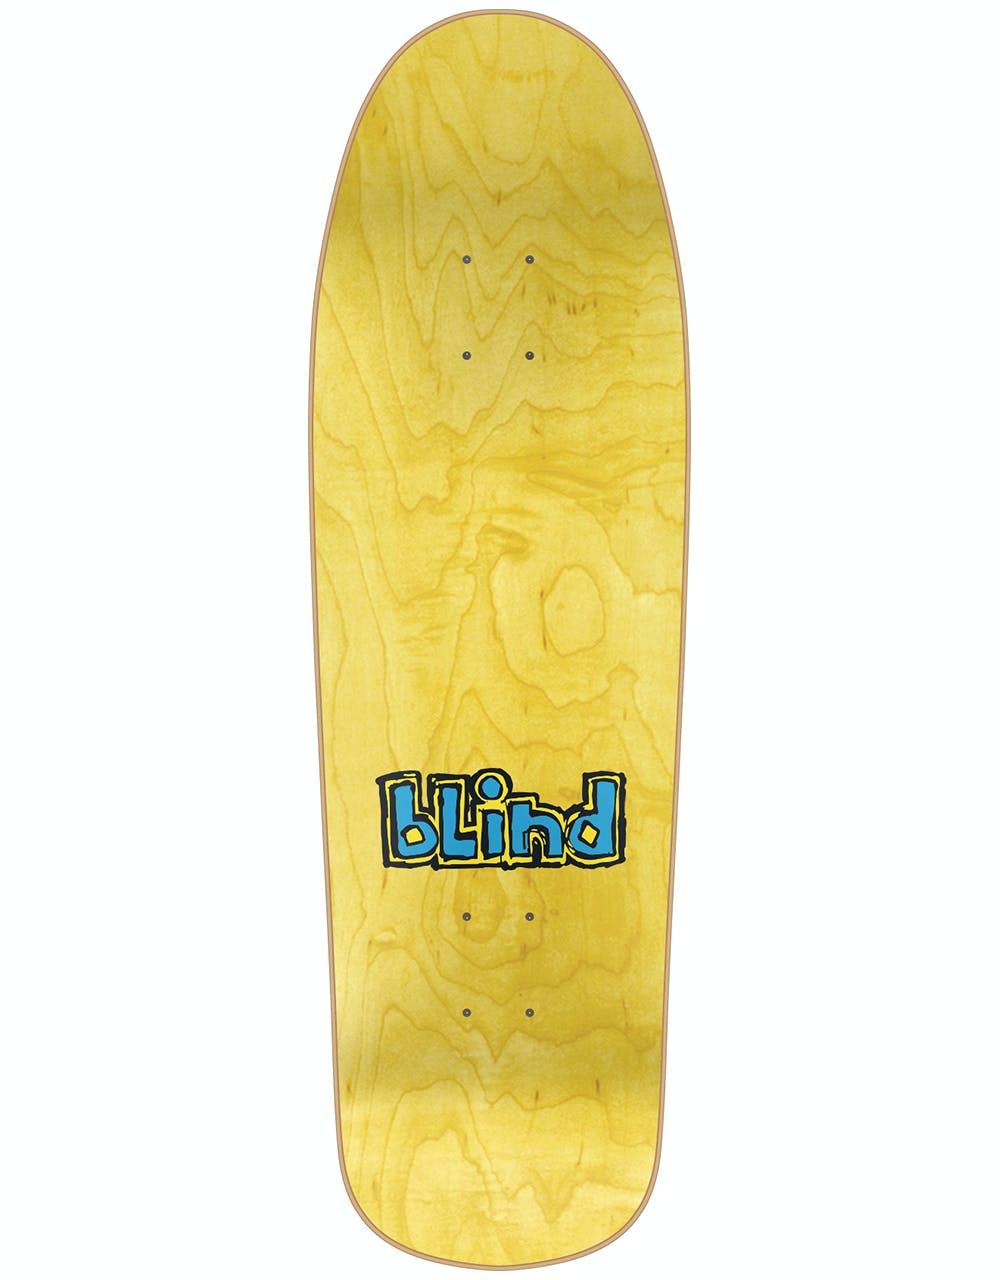 Blind Gonz Colored People Skateboard Deck - 9.875"